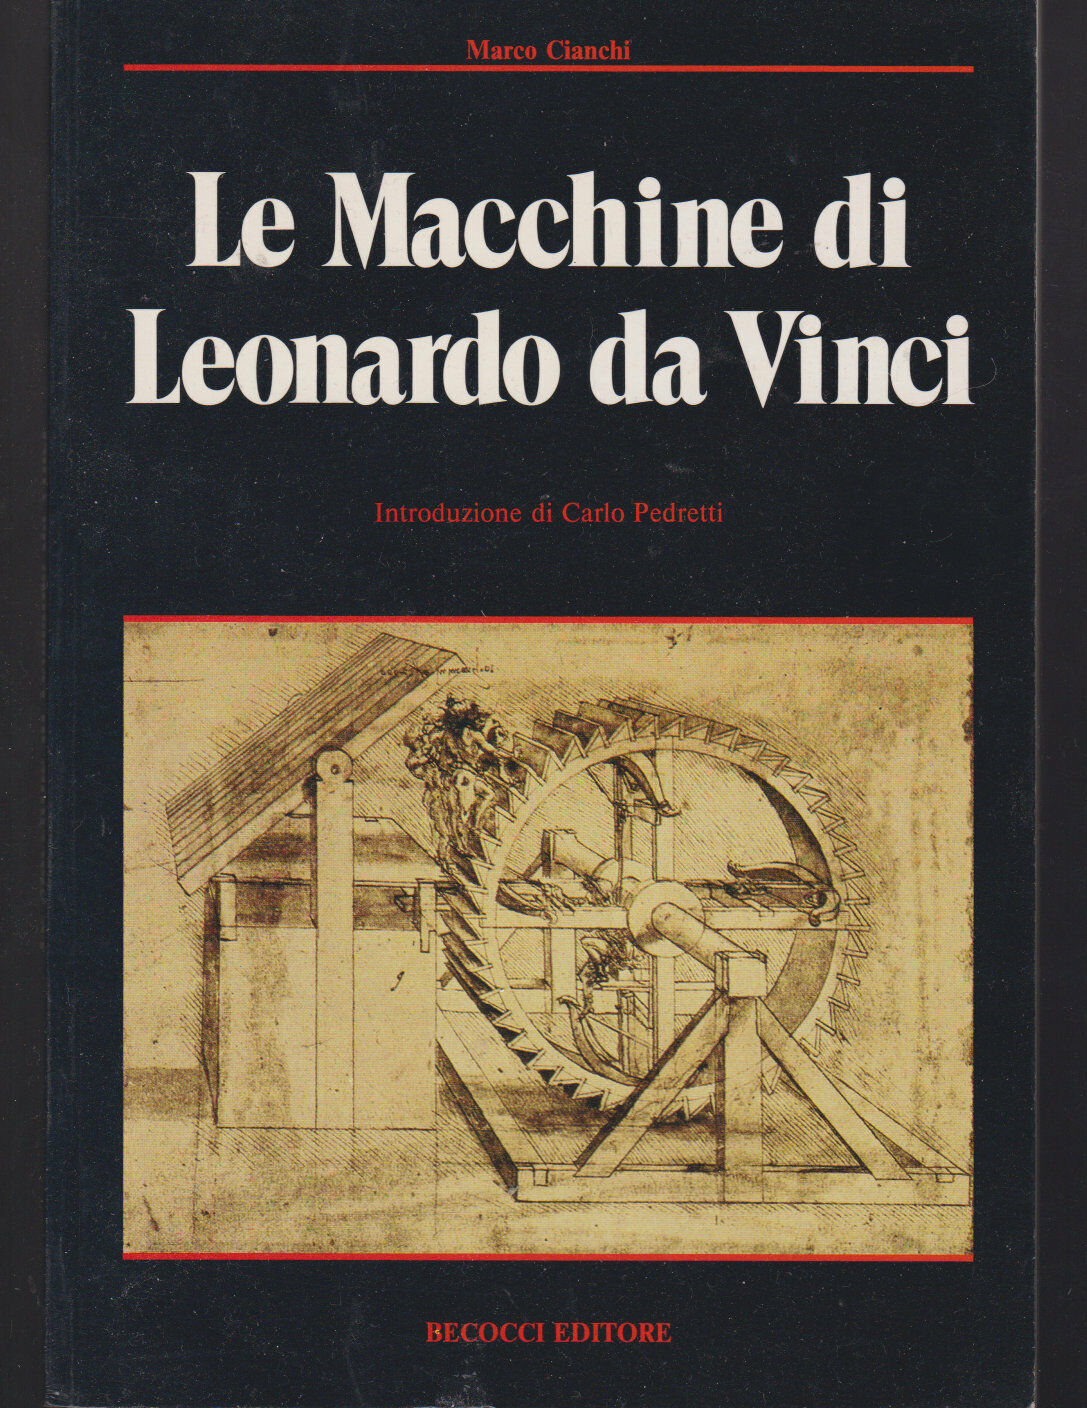 Le Macchine di Leonardo da Vinci